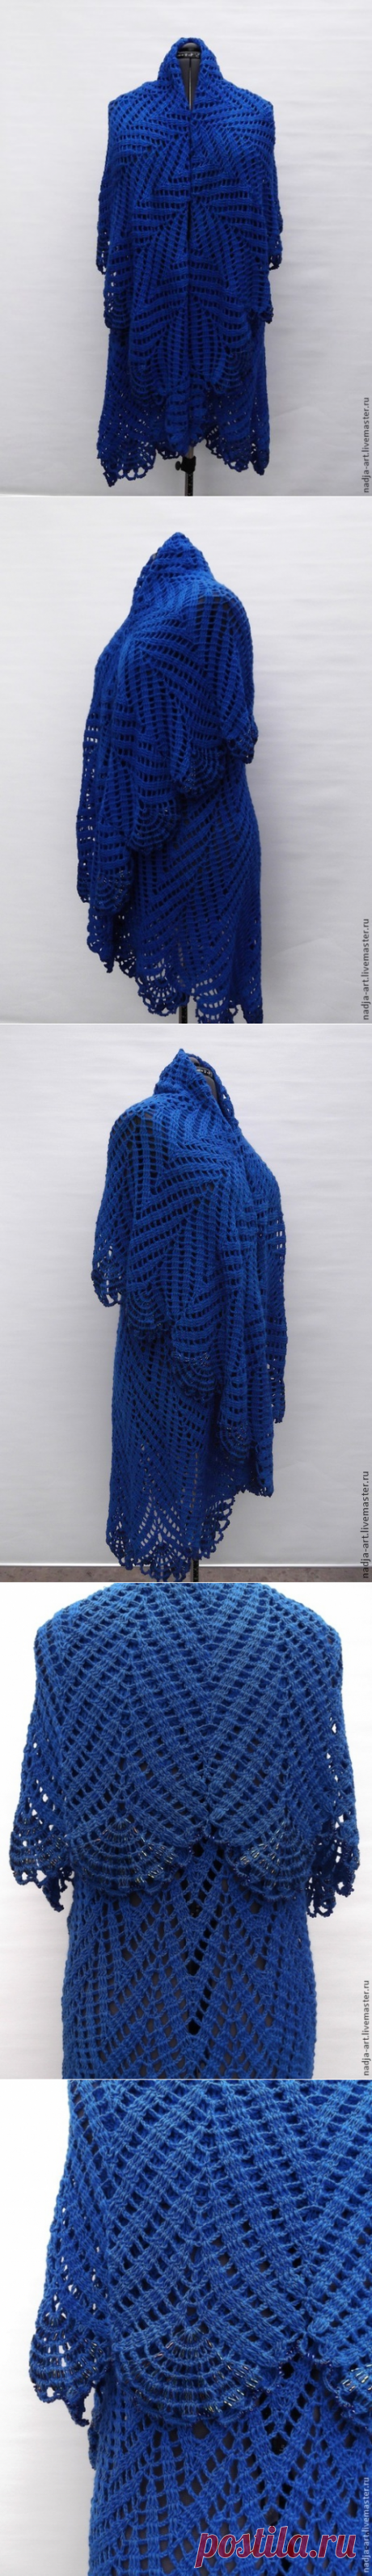 Купить Пальто  Королевская Синяя птица Вязаное Крючком - оригинальный подарок, подарок девушке